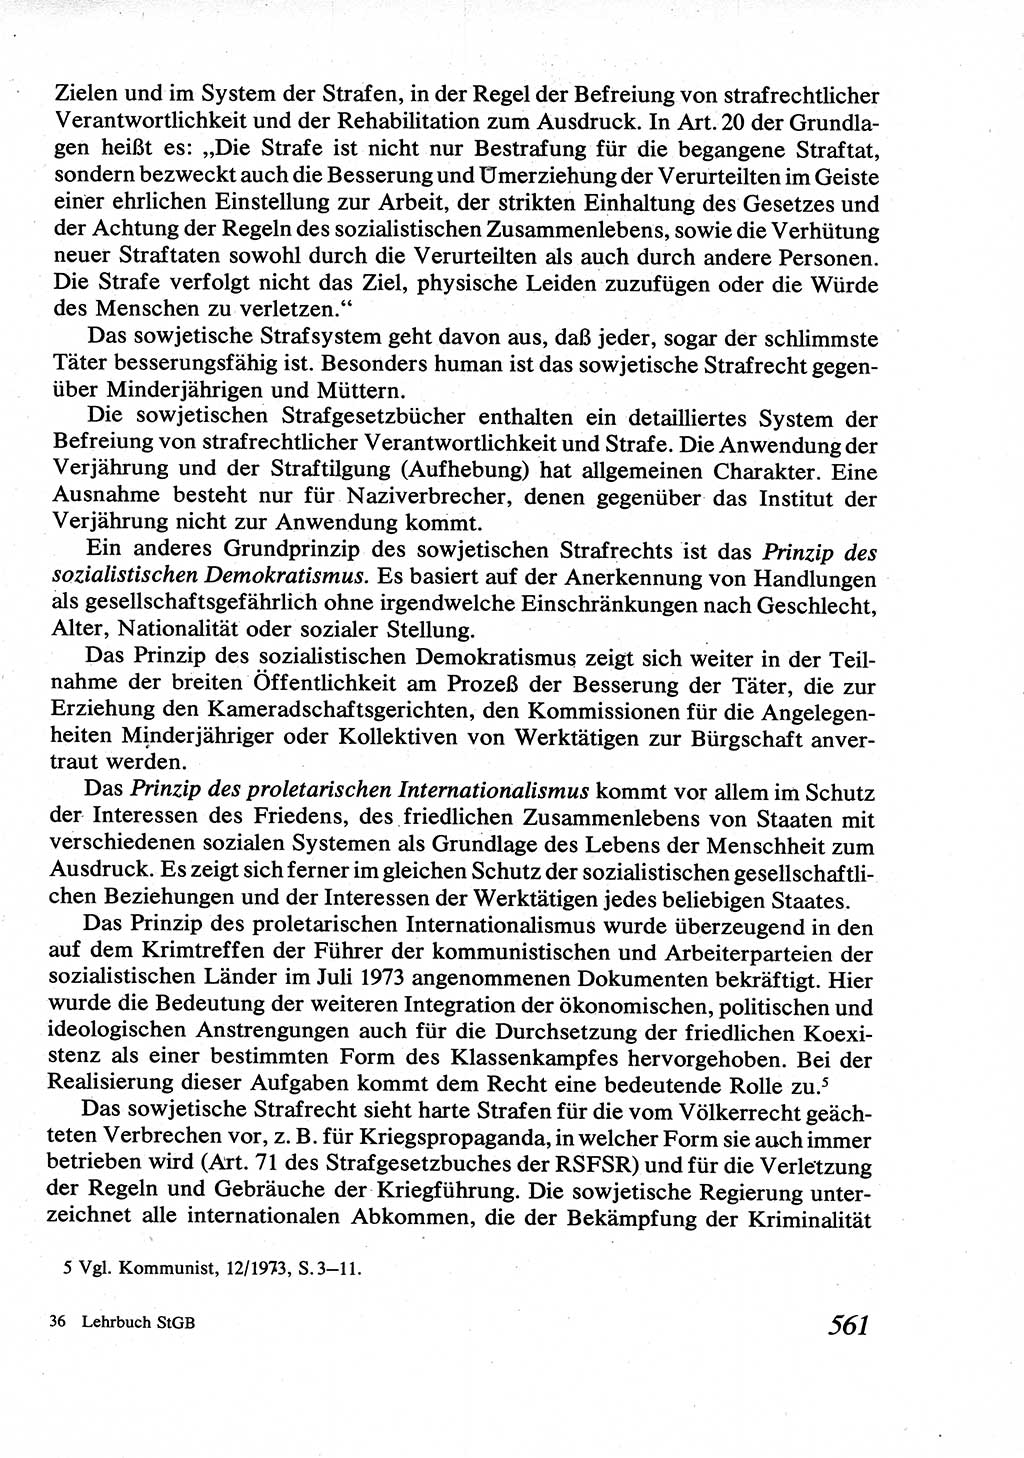 Strafrecht [Deutsche Demokratische Republik (DDR)], Allgemeiner Teil, Lehrbuch 1976, Seite 561 (Strafr. DDR AT Lb. 1976, S. 561)